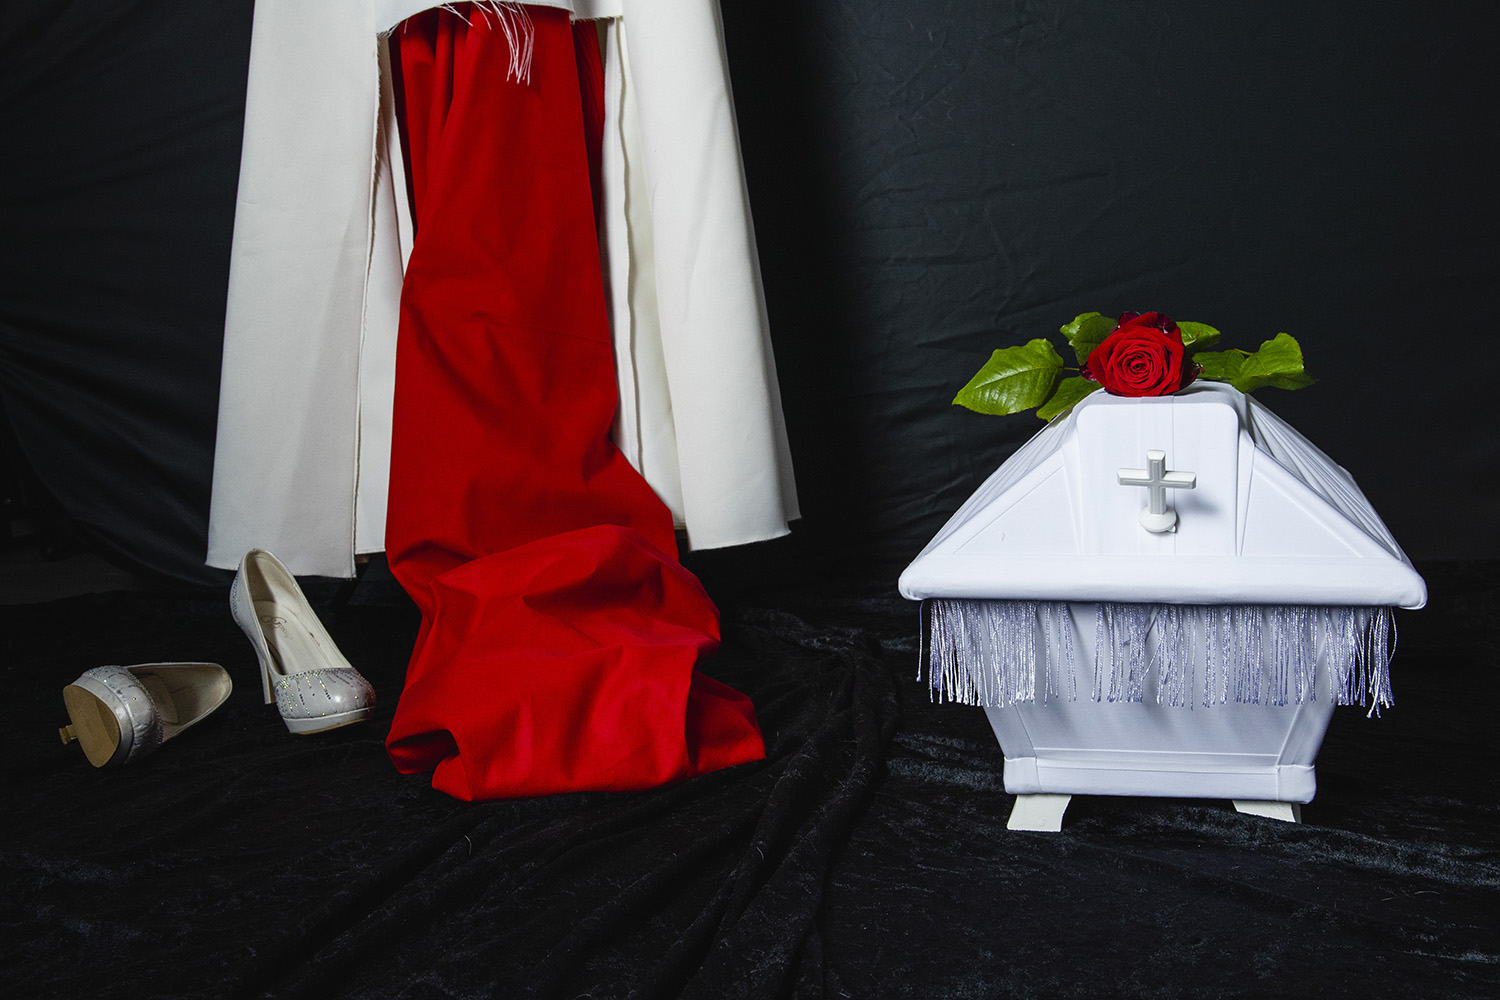 En vit barnkista med röd ros på golvet. I bakgrunden syns en trasig brudklänning.